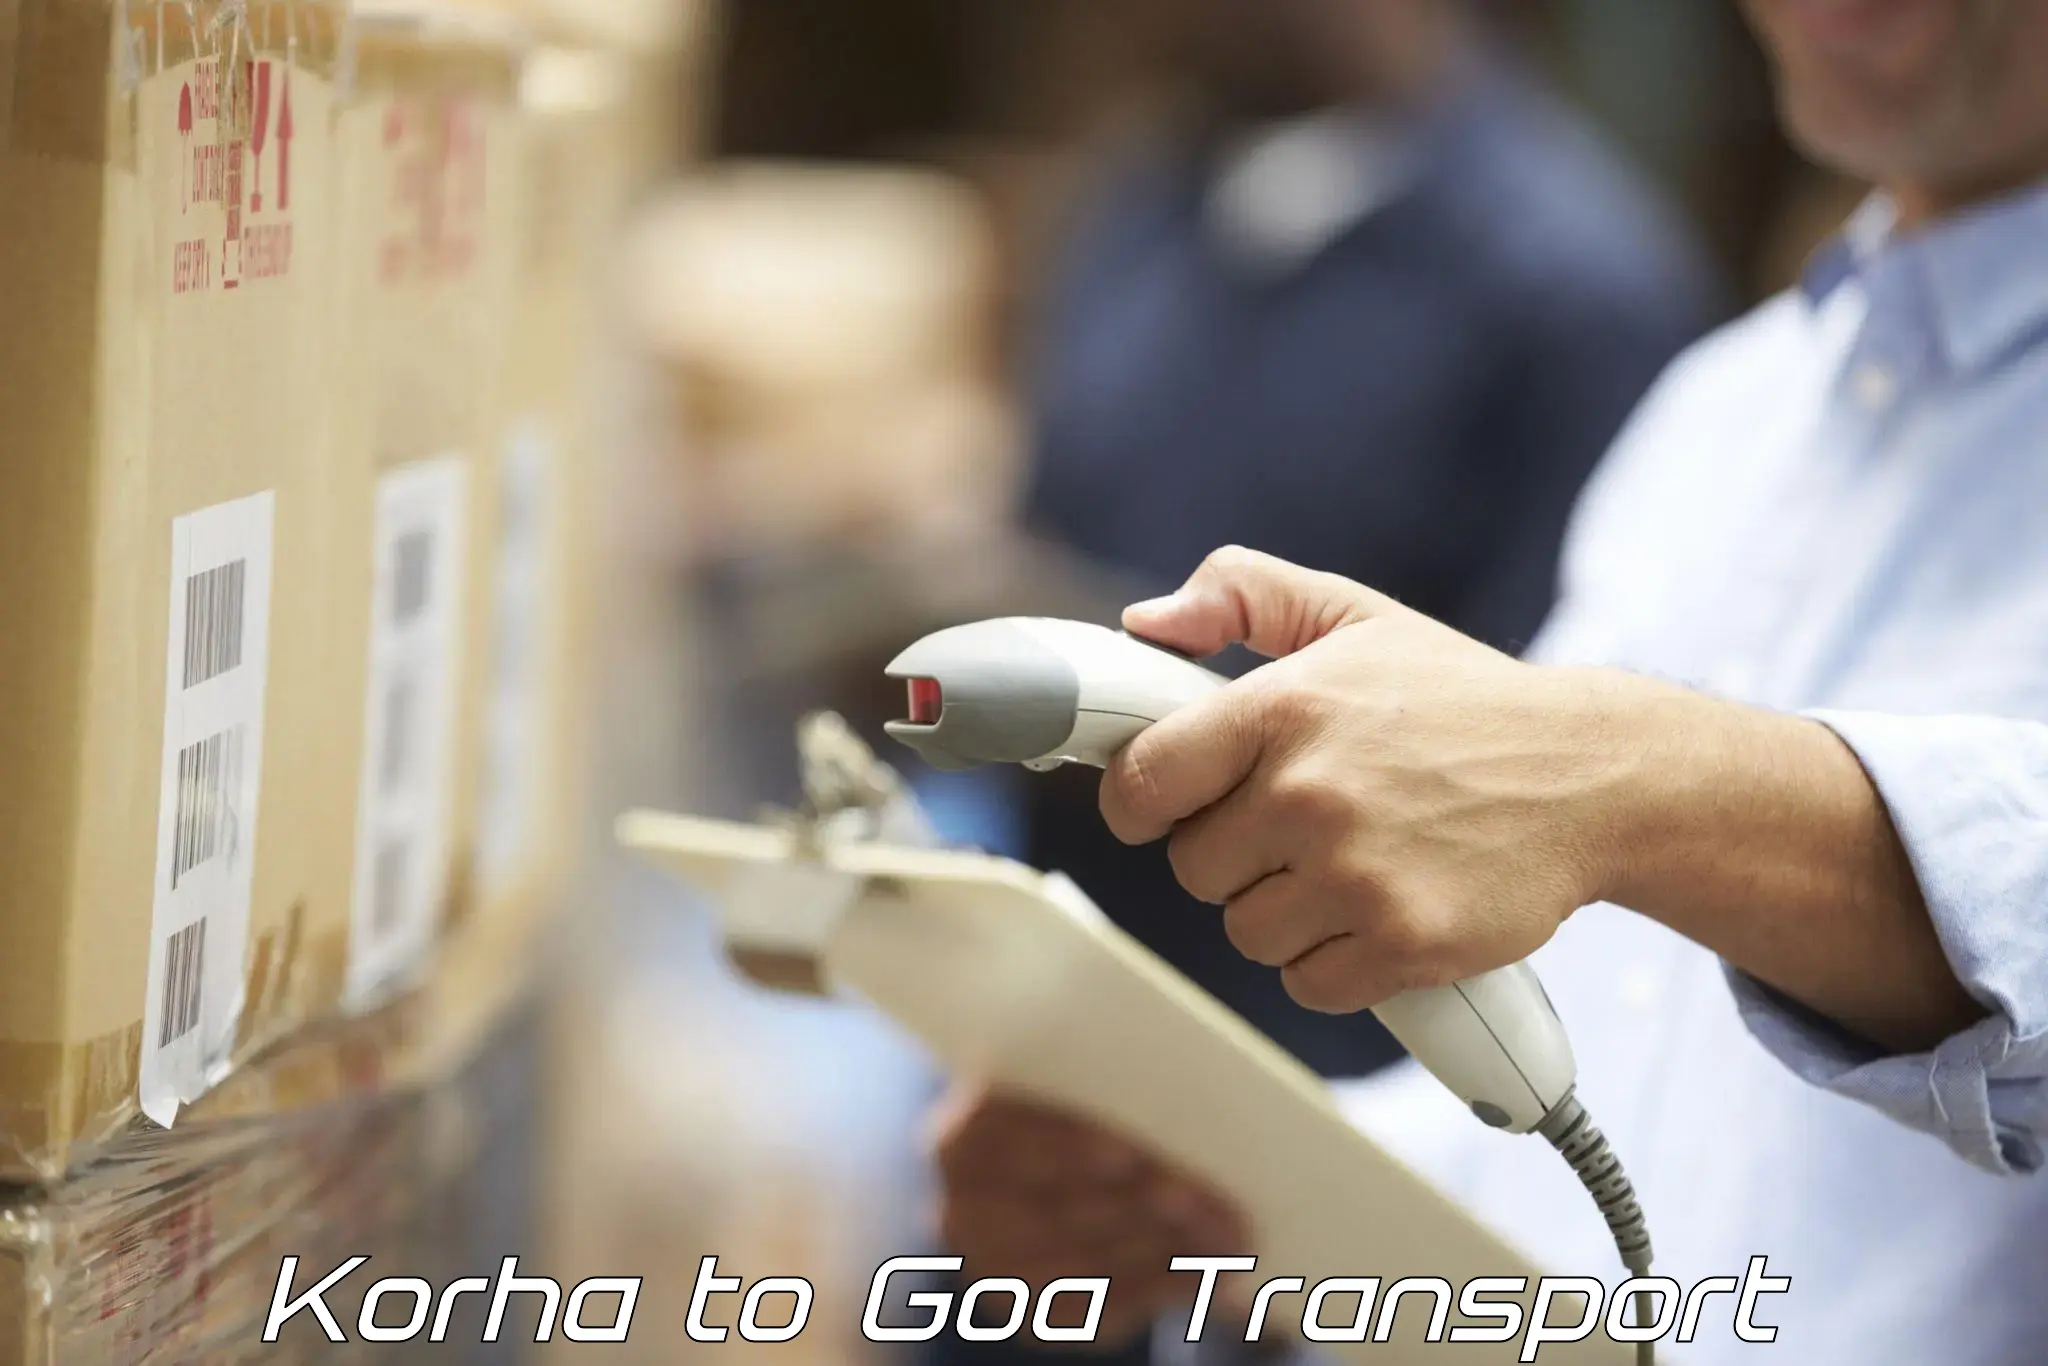 Scooty transport charges Korha to IIT Goa